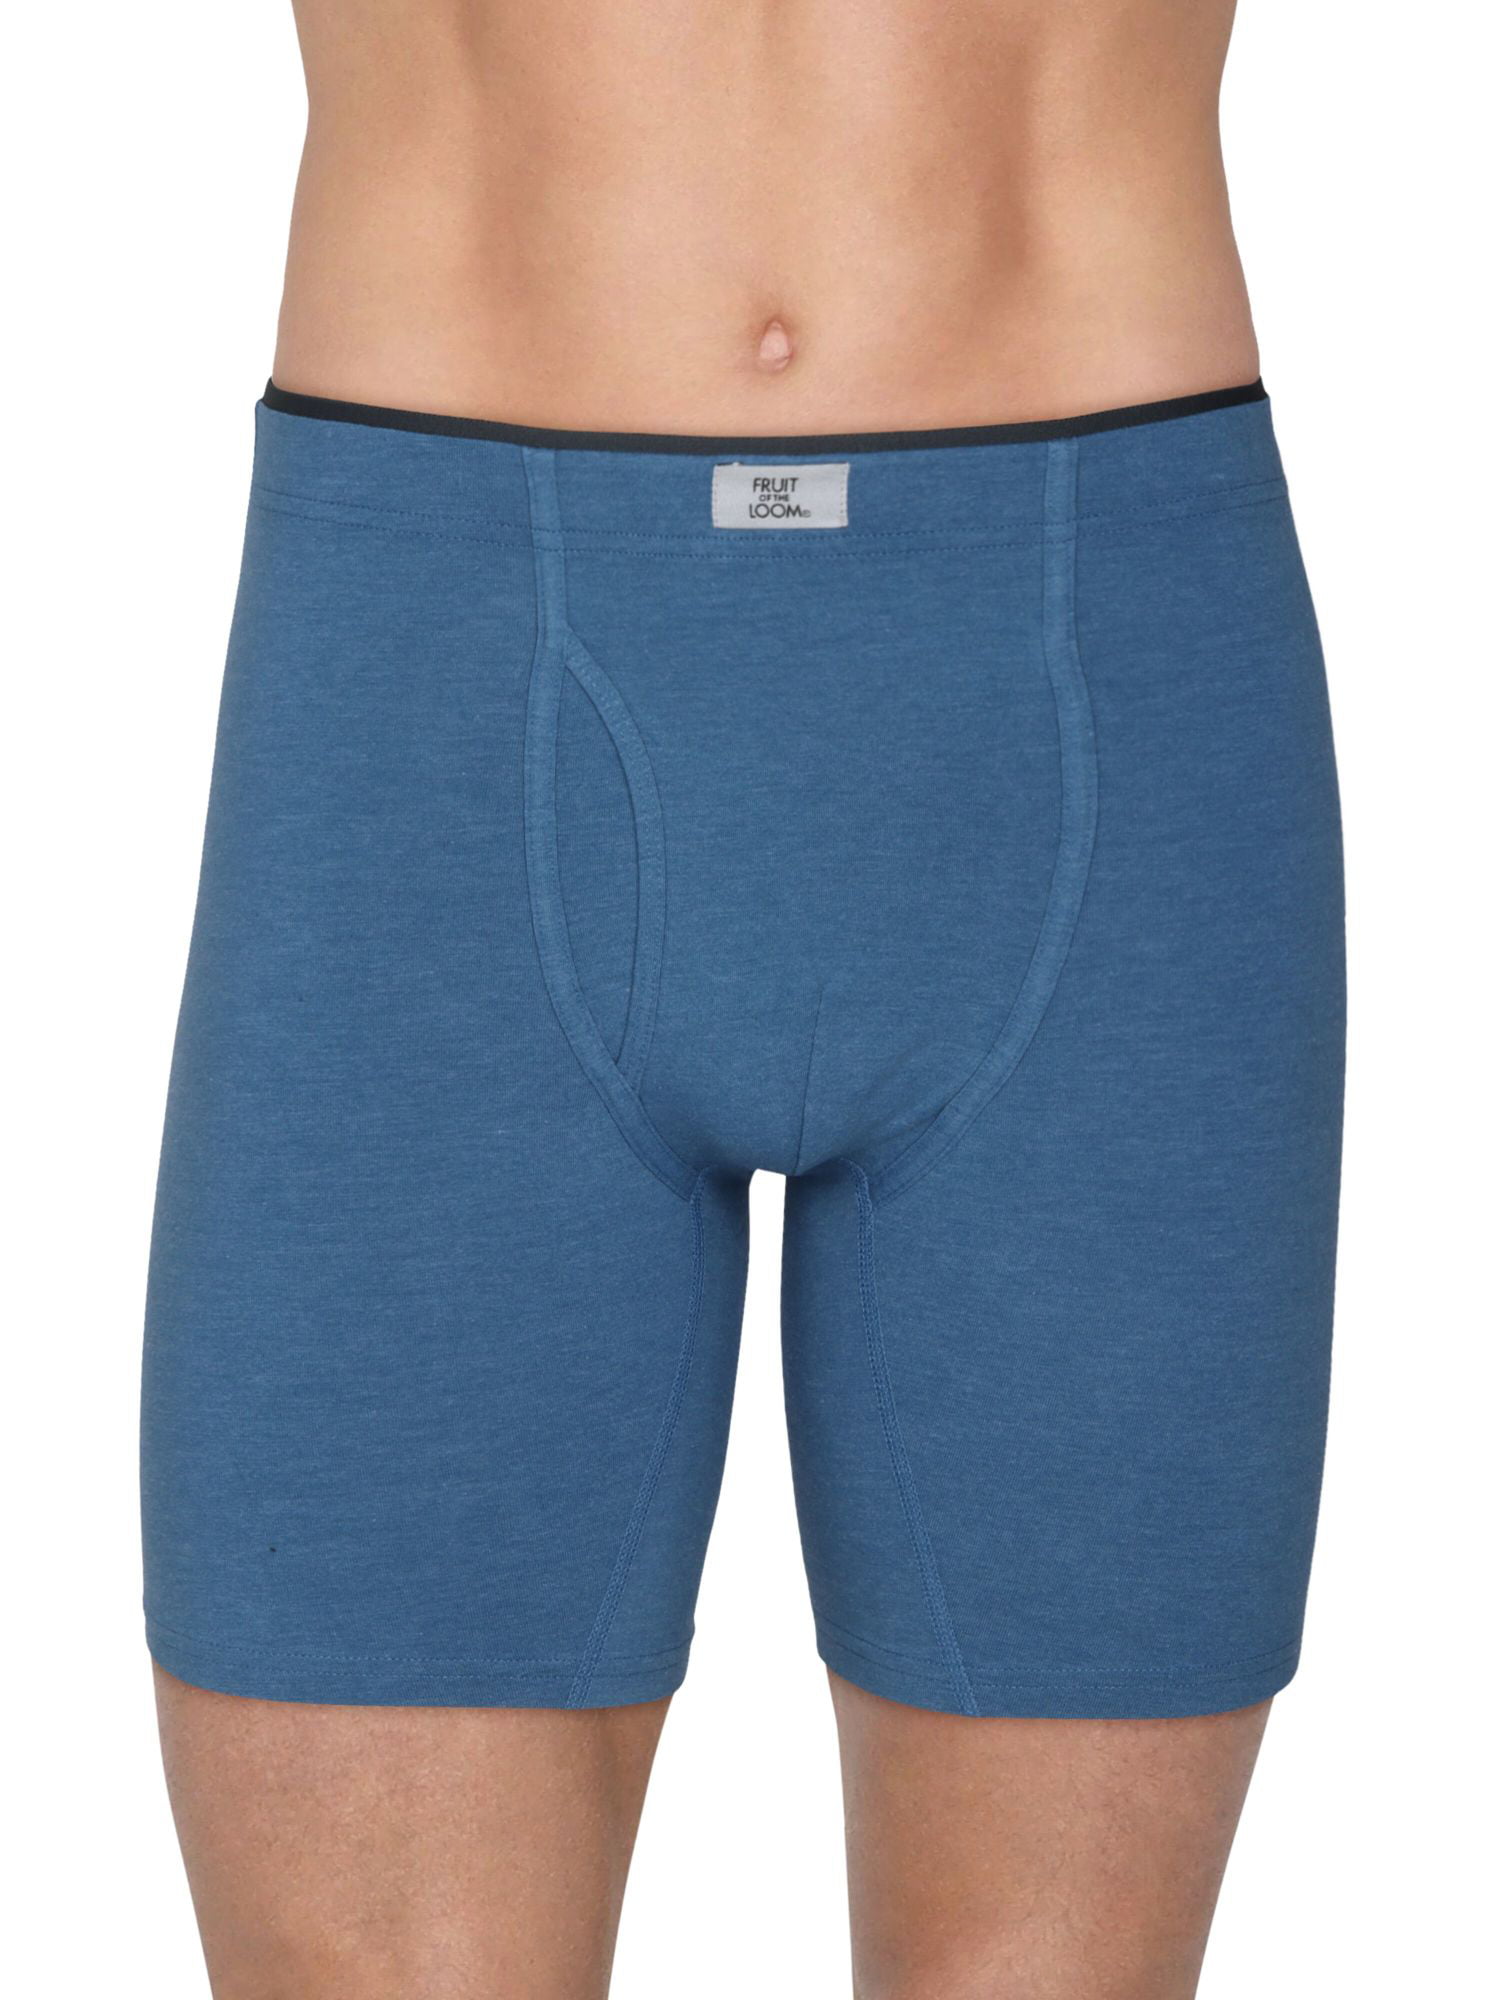 Boxére Mens Boxer Briefs Shorts Comfort Underwear for Men 3 Pack 